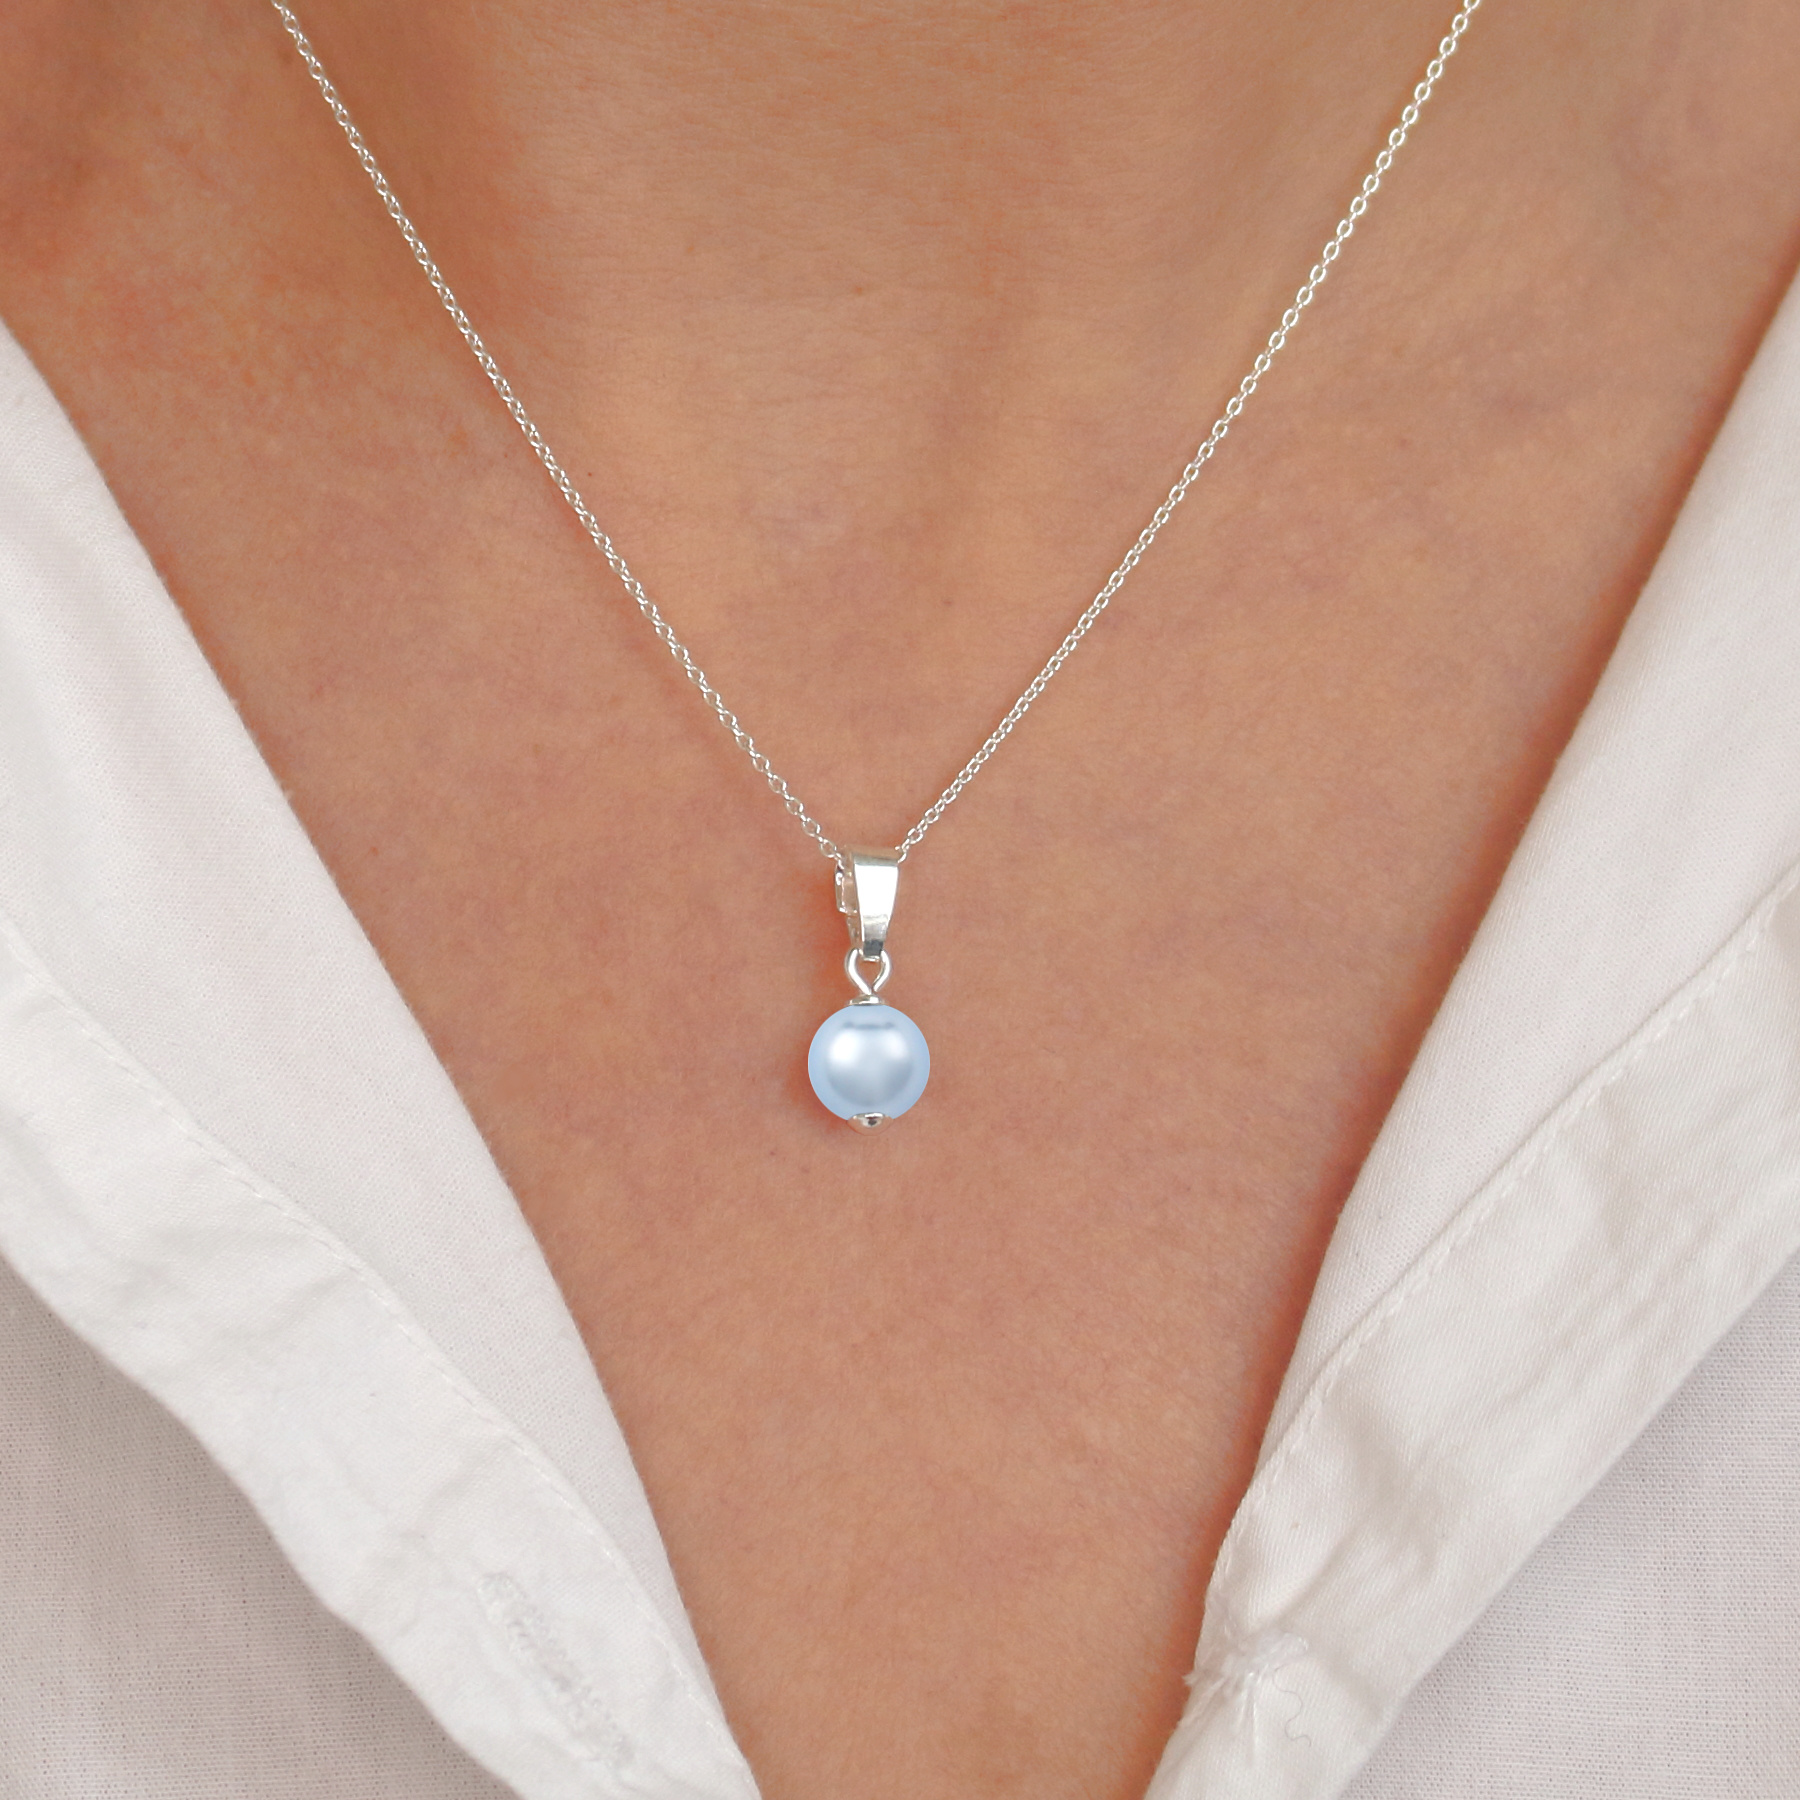 Halskette Silber - ARLIZI 1528 ARLIZI hellblau Schmuck Webshop Perle - Anhänger